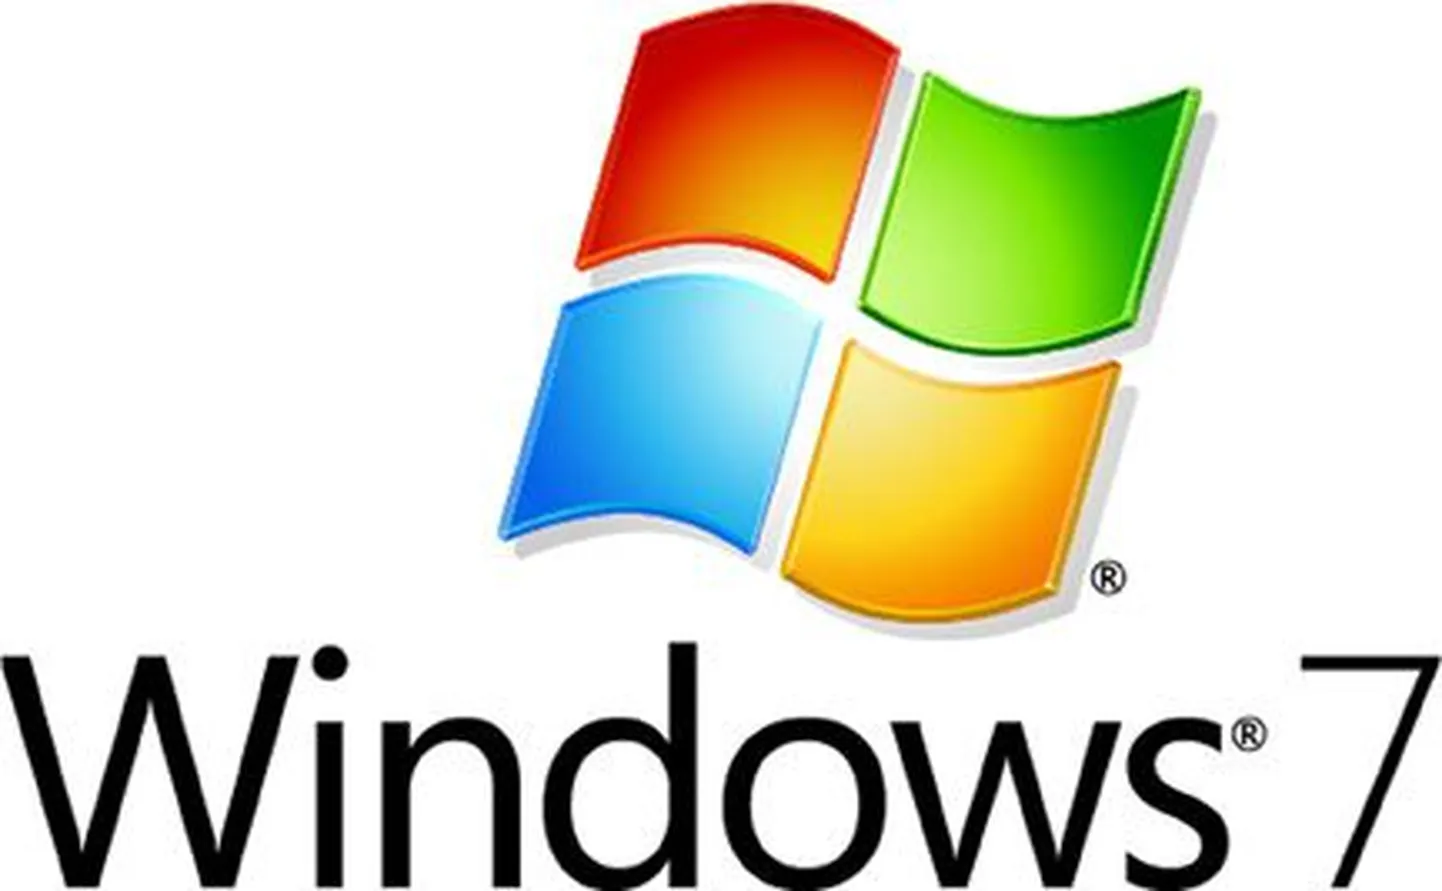 Windows 7 jõudlus pole Vistast parem, selgus Computerworldi testist.